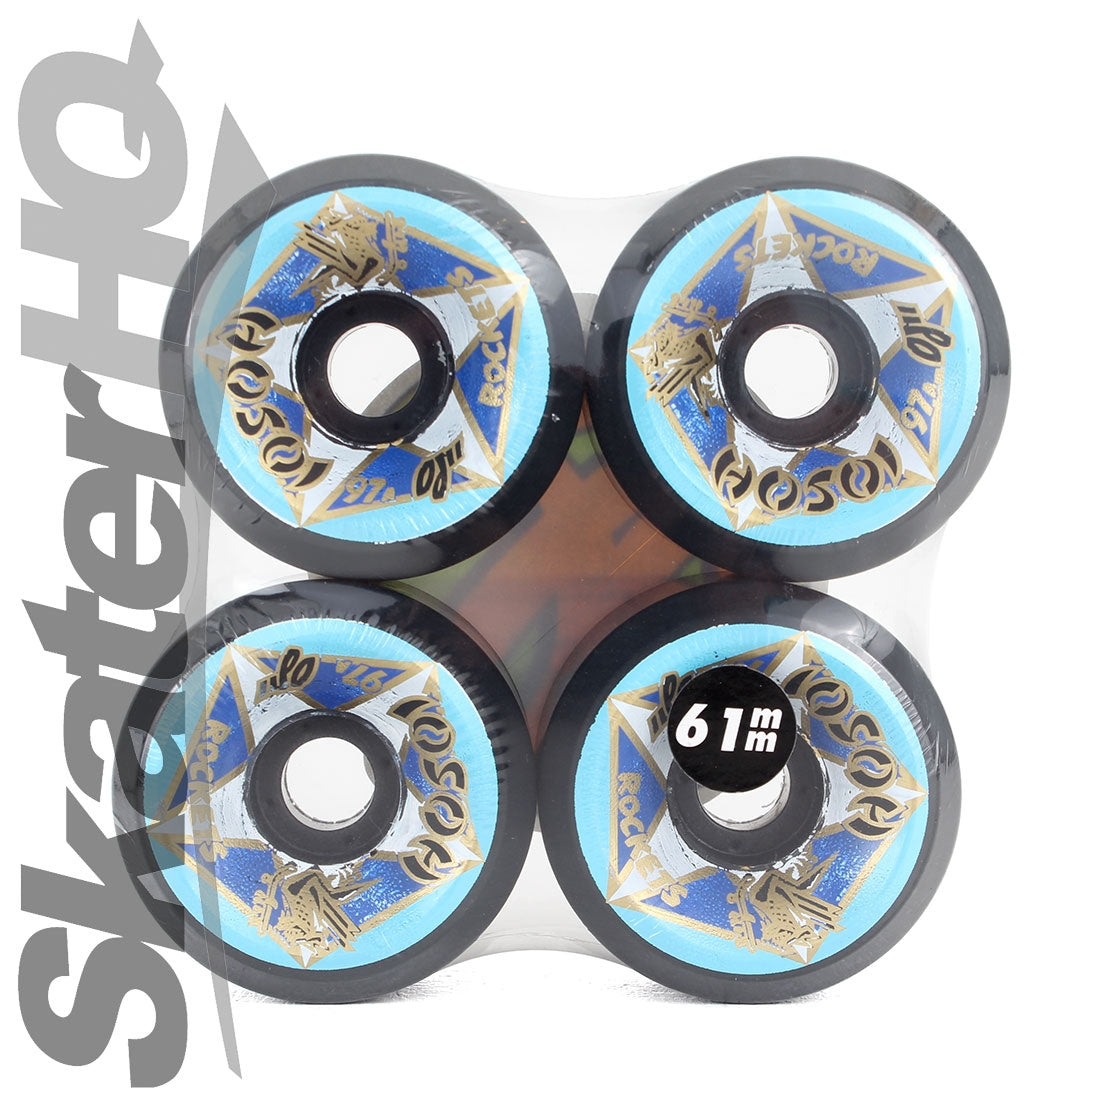 OJs Hosoi Rockets 61mm/97a 4pk Skateboard Wheels